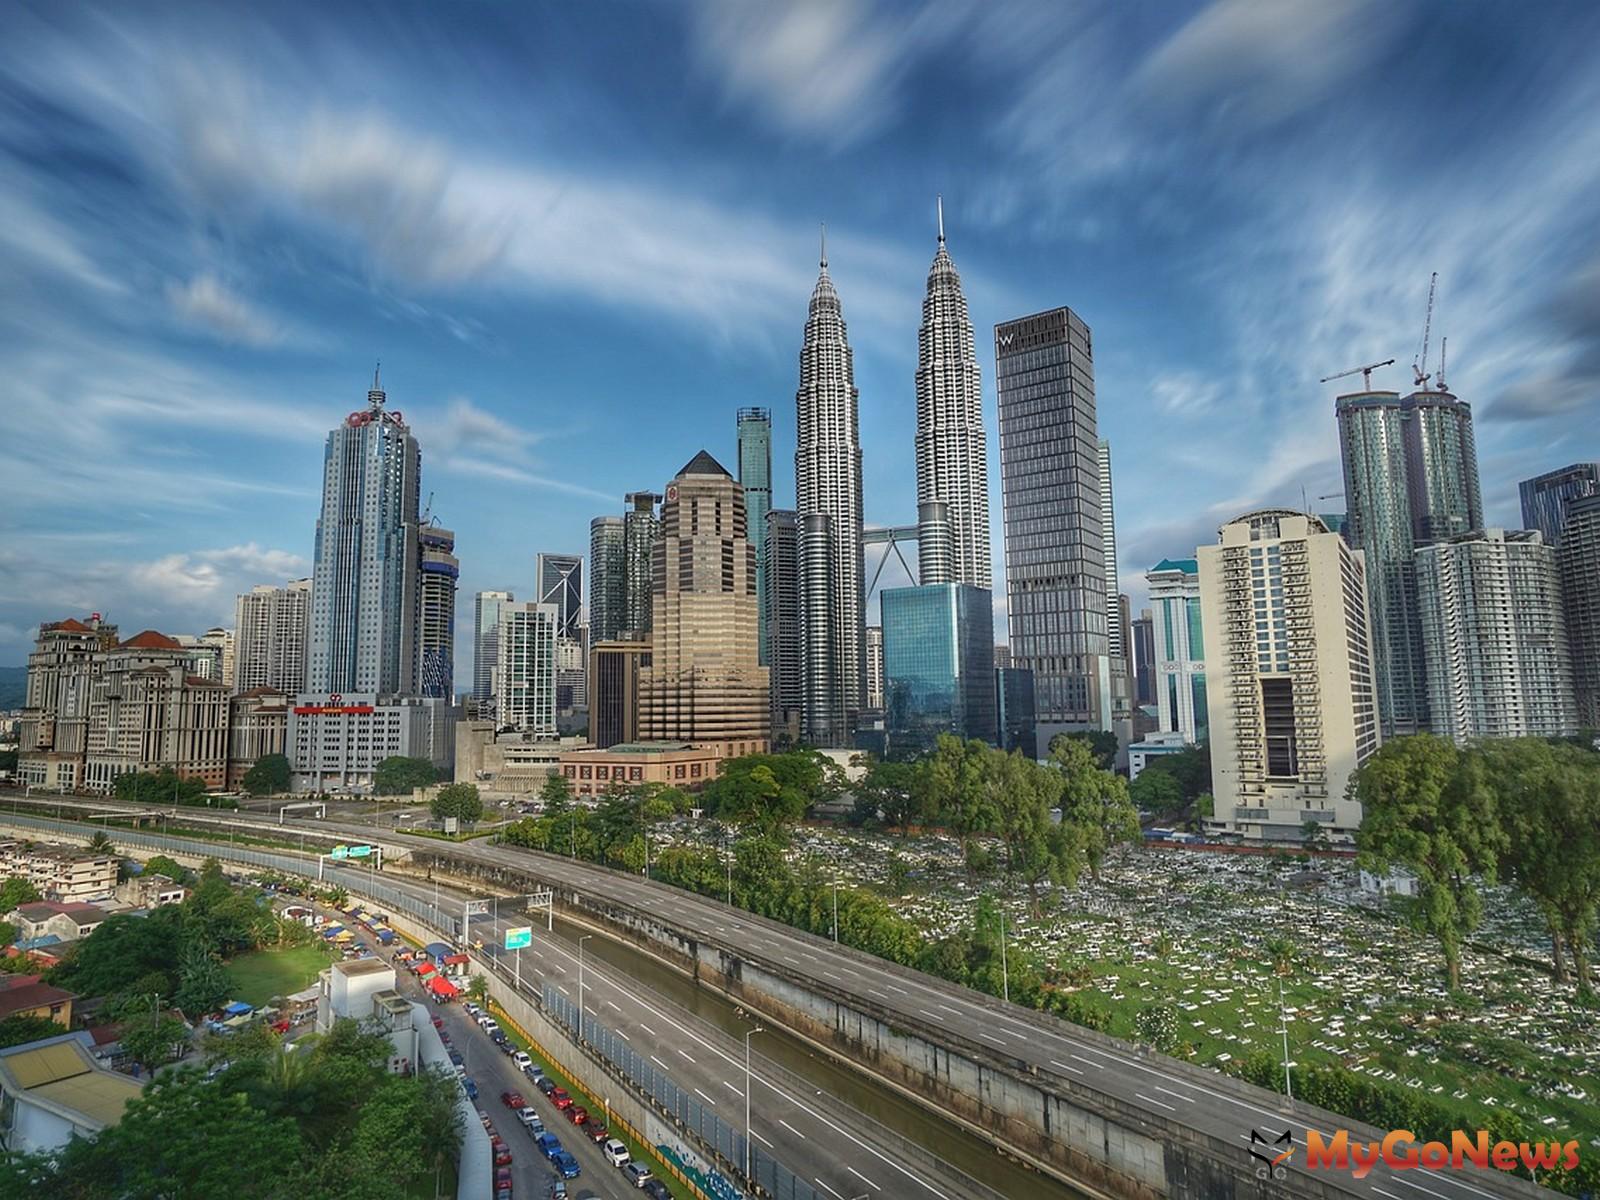 (馬來西亞 圖/ pixabay) MyGoNews房地產新聞 Global Real Estate